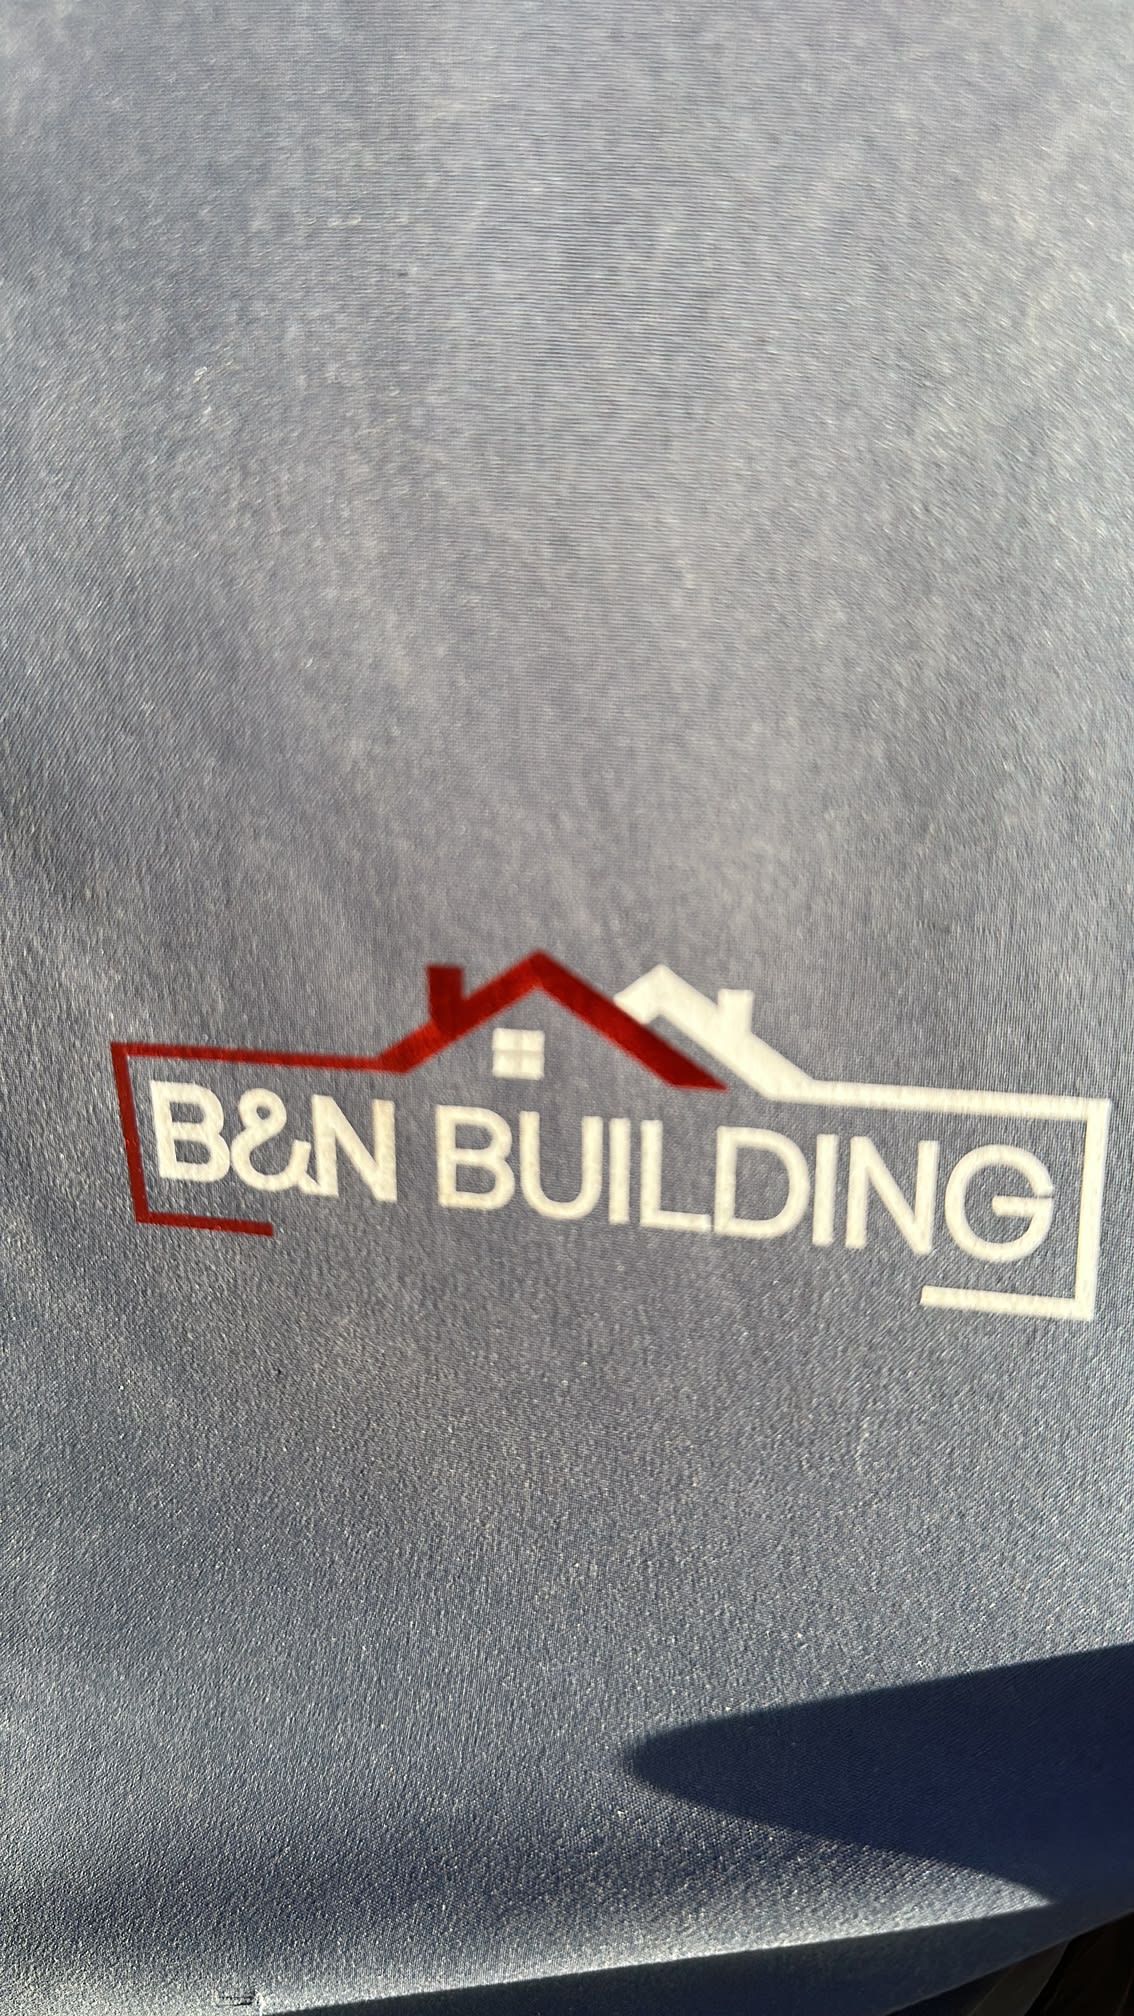 Images B&N Building Ltd